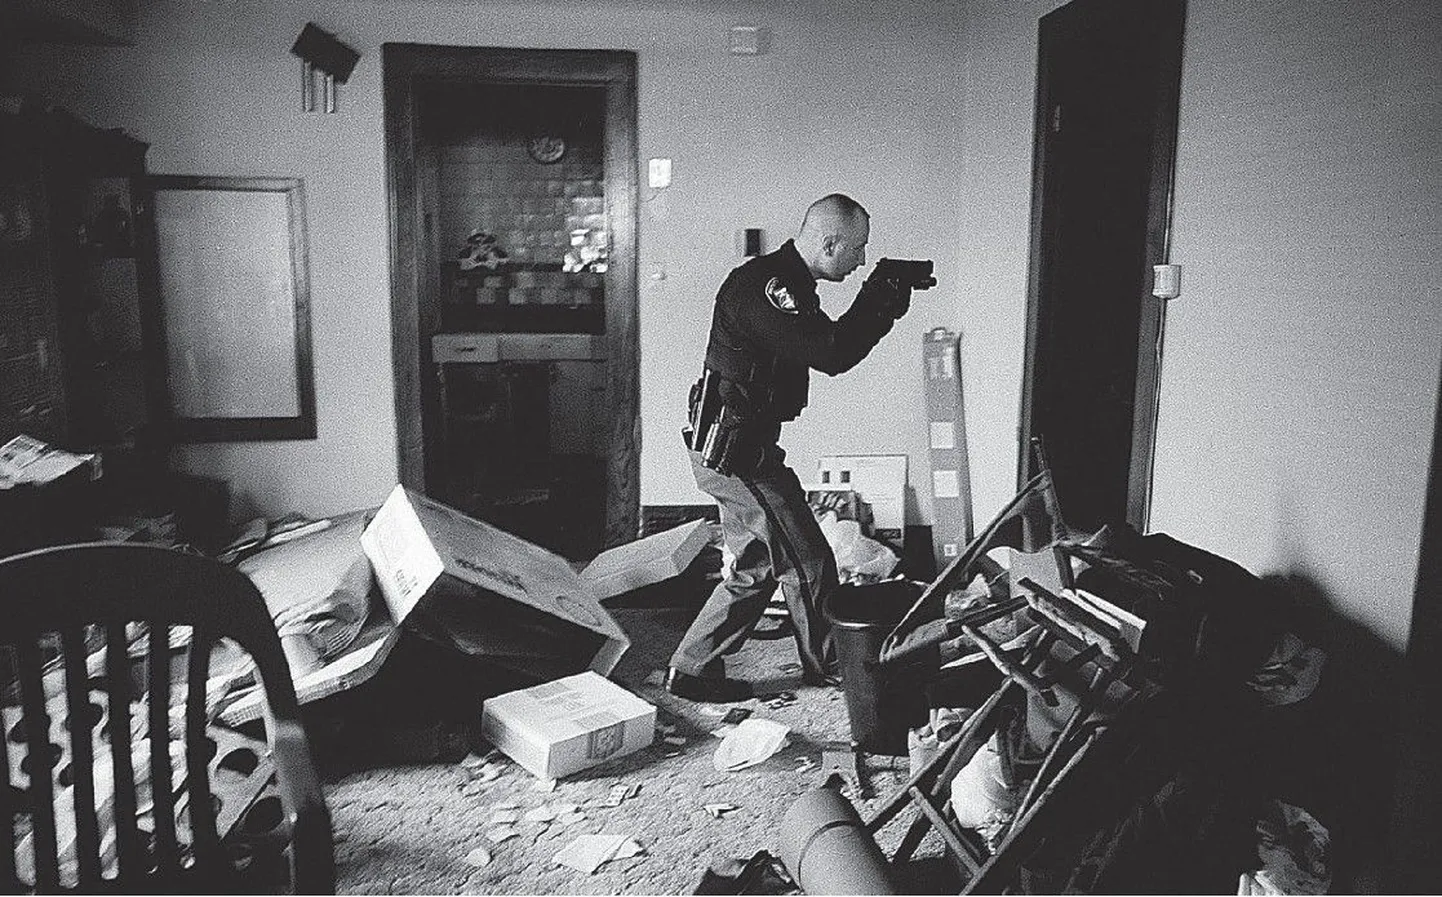 Esikoht. Fotograaf Anthony Suau (Time). USA Clevelandi detektiiv Robert Kole veendub, et majaelanikud on välja kolinud. Liis Treimann: «Võidufoto on üllatav, pilt hakkab vaataja jaoks ise eel- ja järellugu jutustama.»